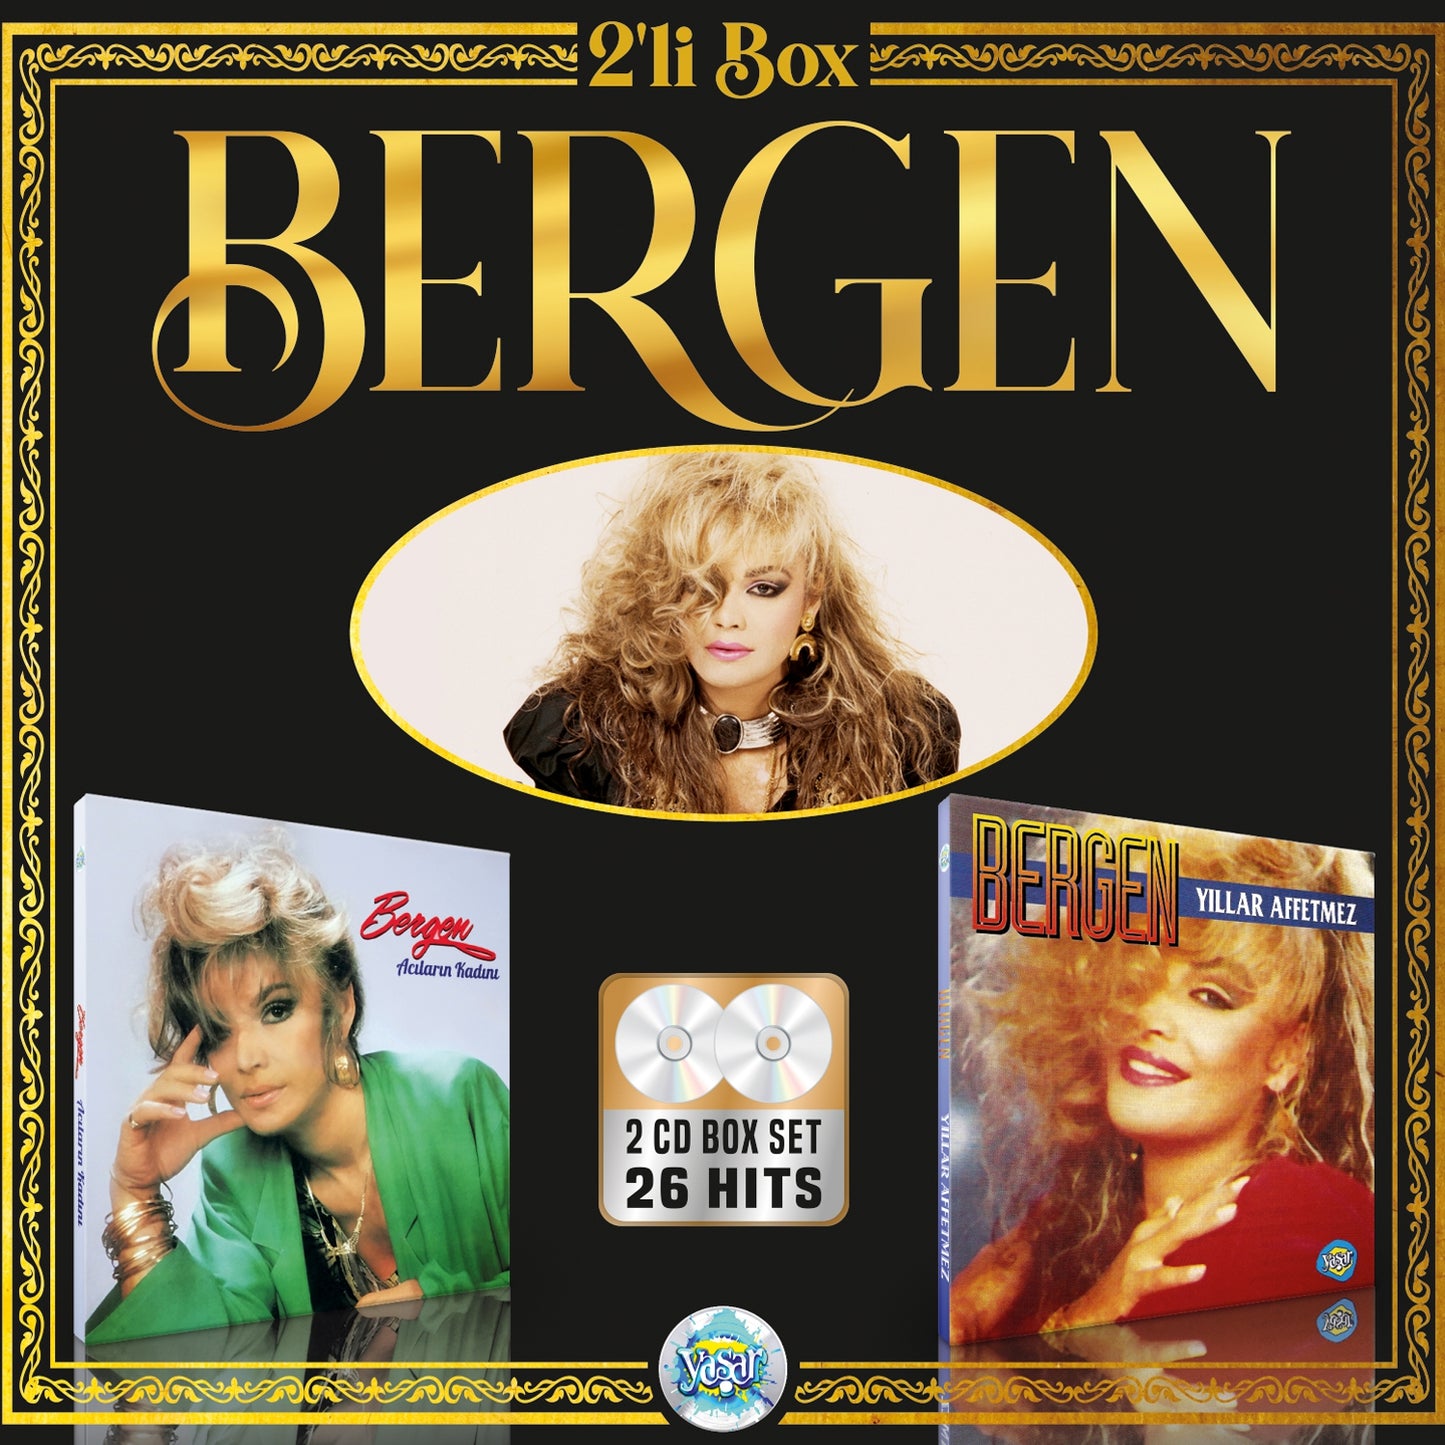 Bergen - Acilarin Kadini & Yillar Affetmez (2 CD Set)